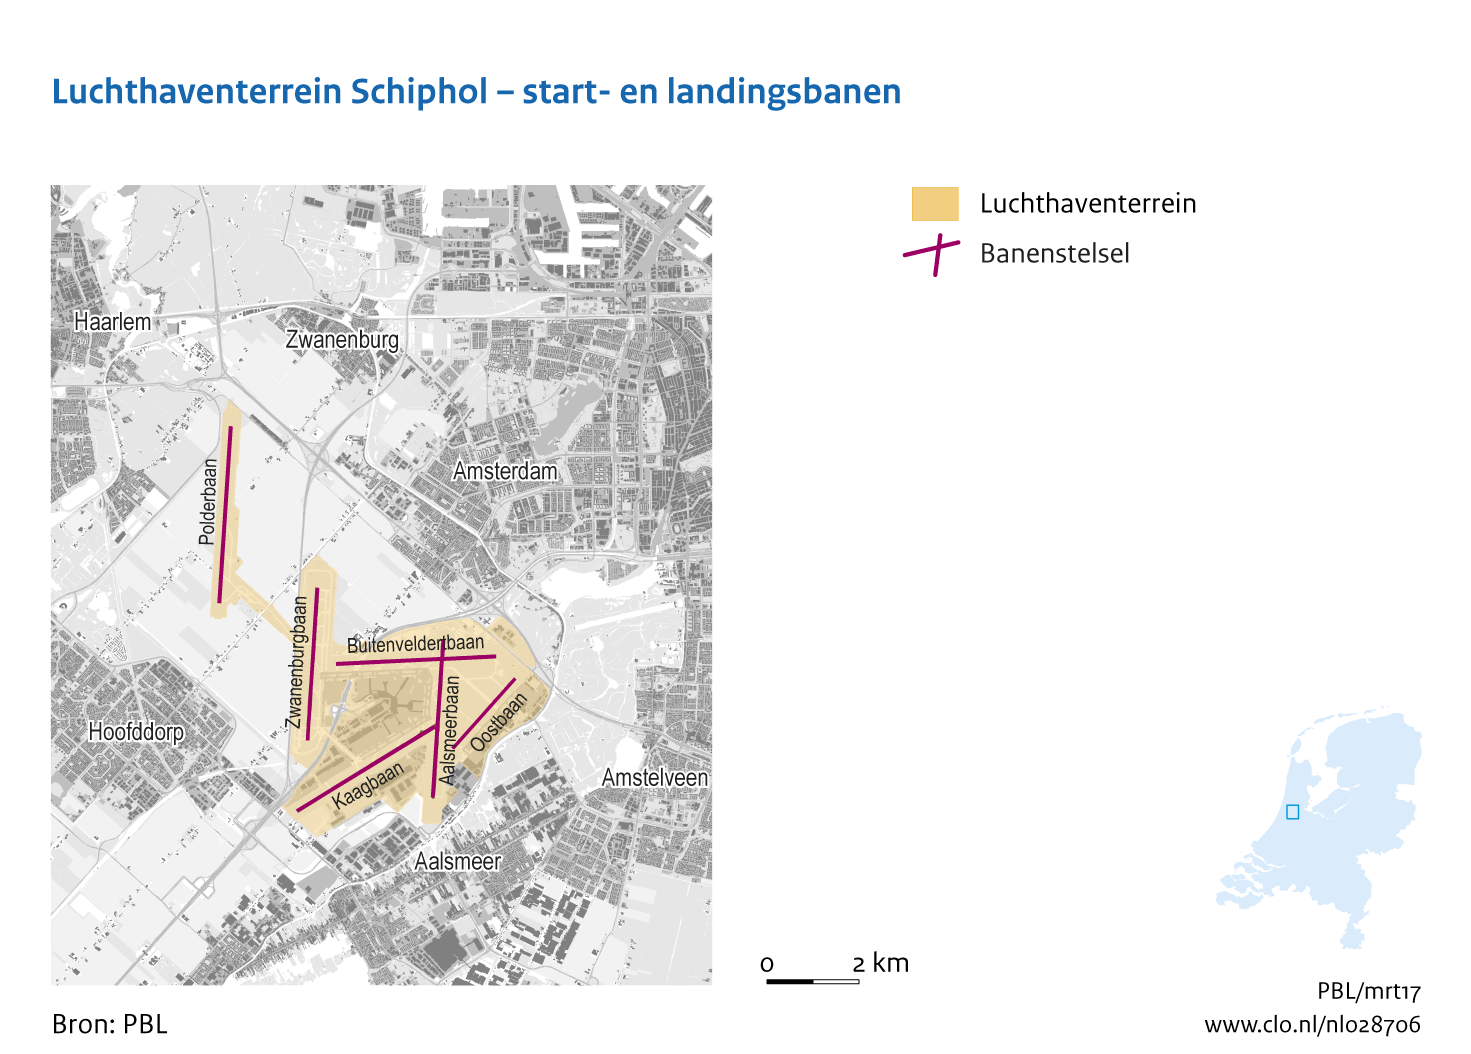 Figuur  Luchthaventerrein Schiphol - start- en landingsbanen. In de rest van de tekst wordt deze figuur uitgebreider uitgelegd.